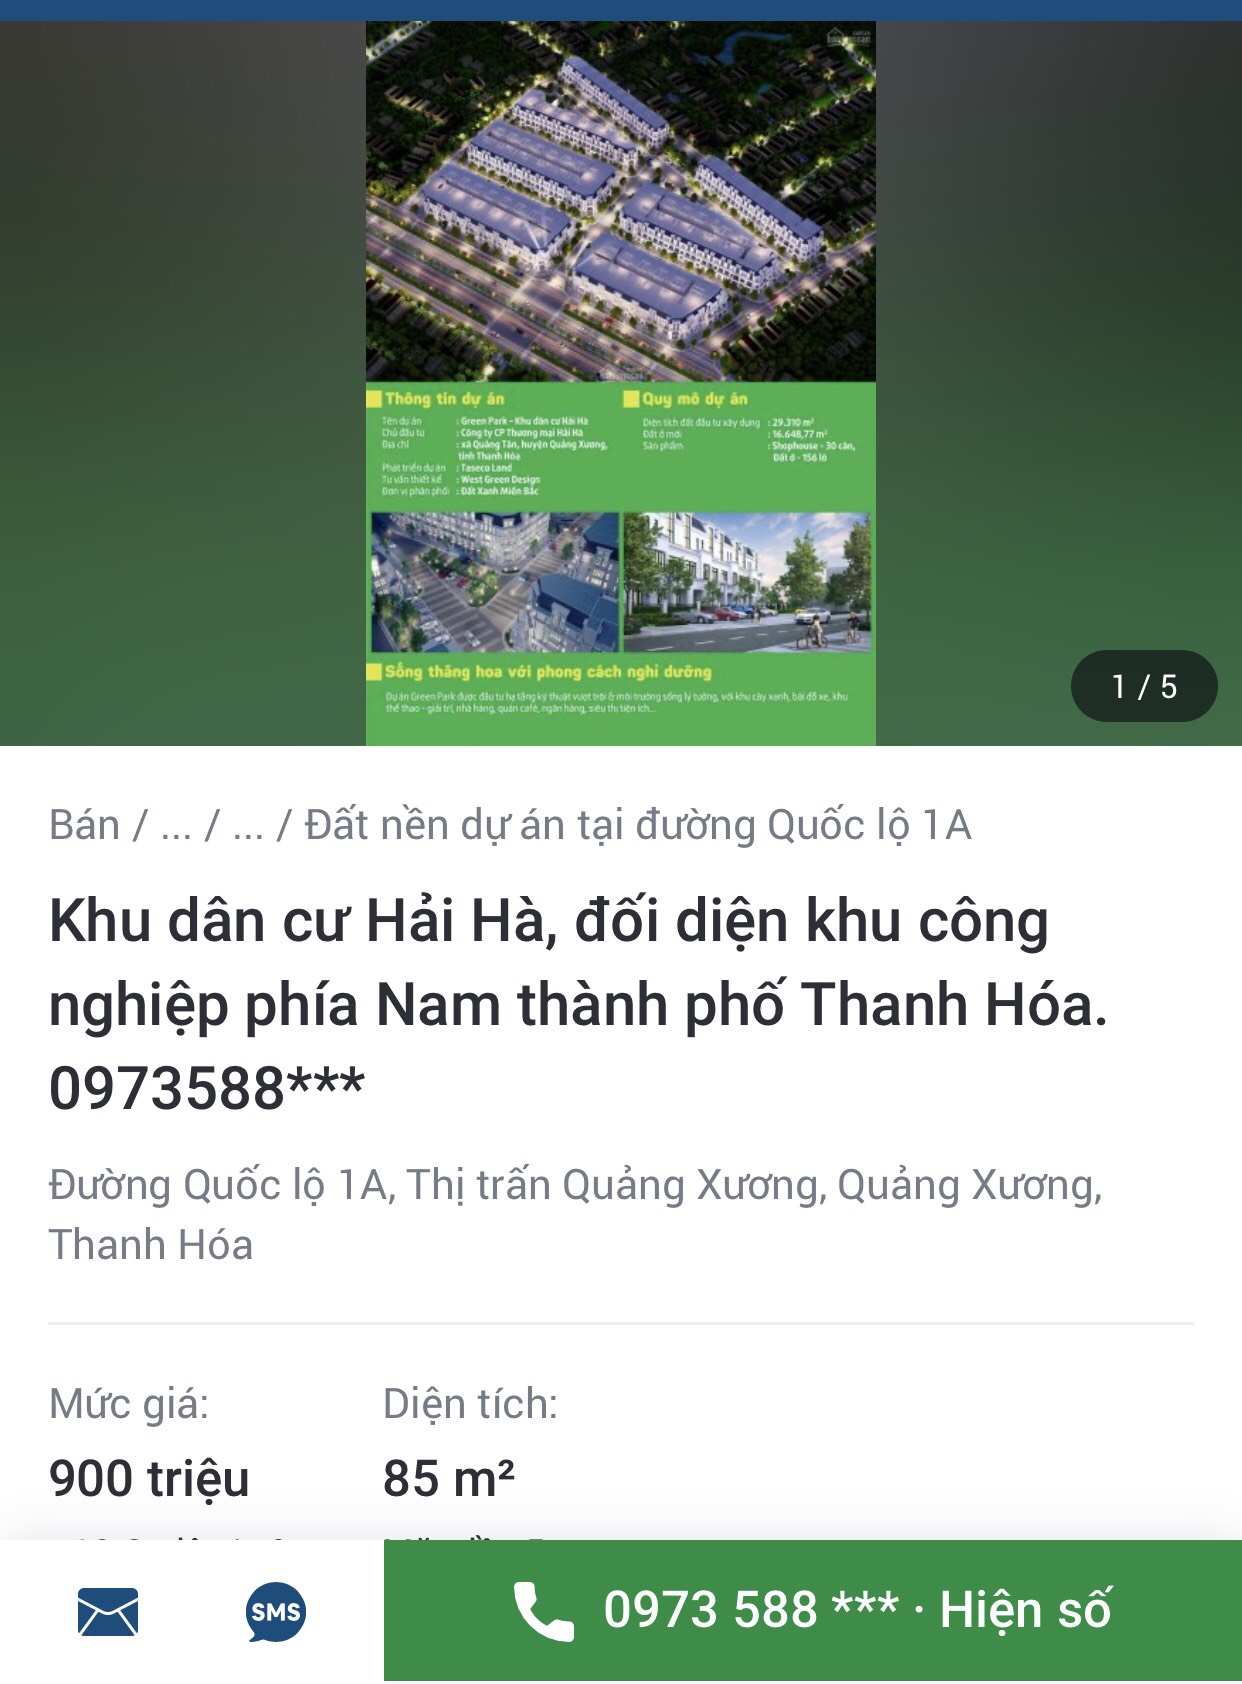 Dự án được ra bán với giá gấp nhiều lần so với giá tỉnh Thanh Hoá giao đất cho Công ty Cổ phần Thương mại Hải Hà.